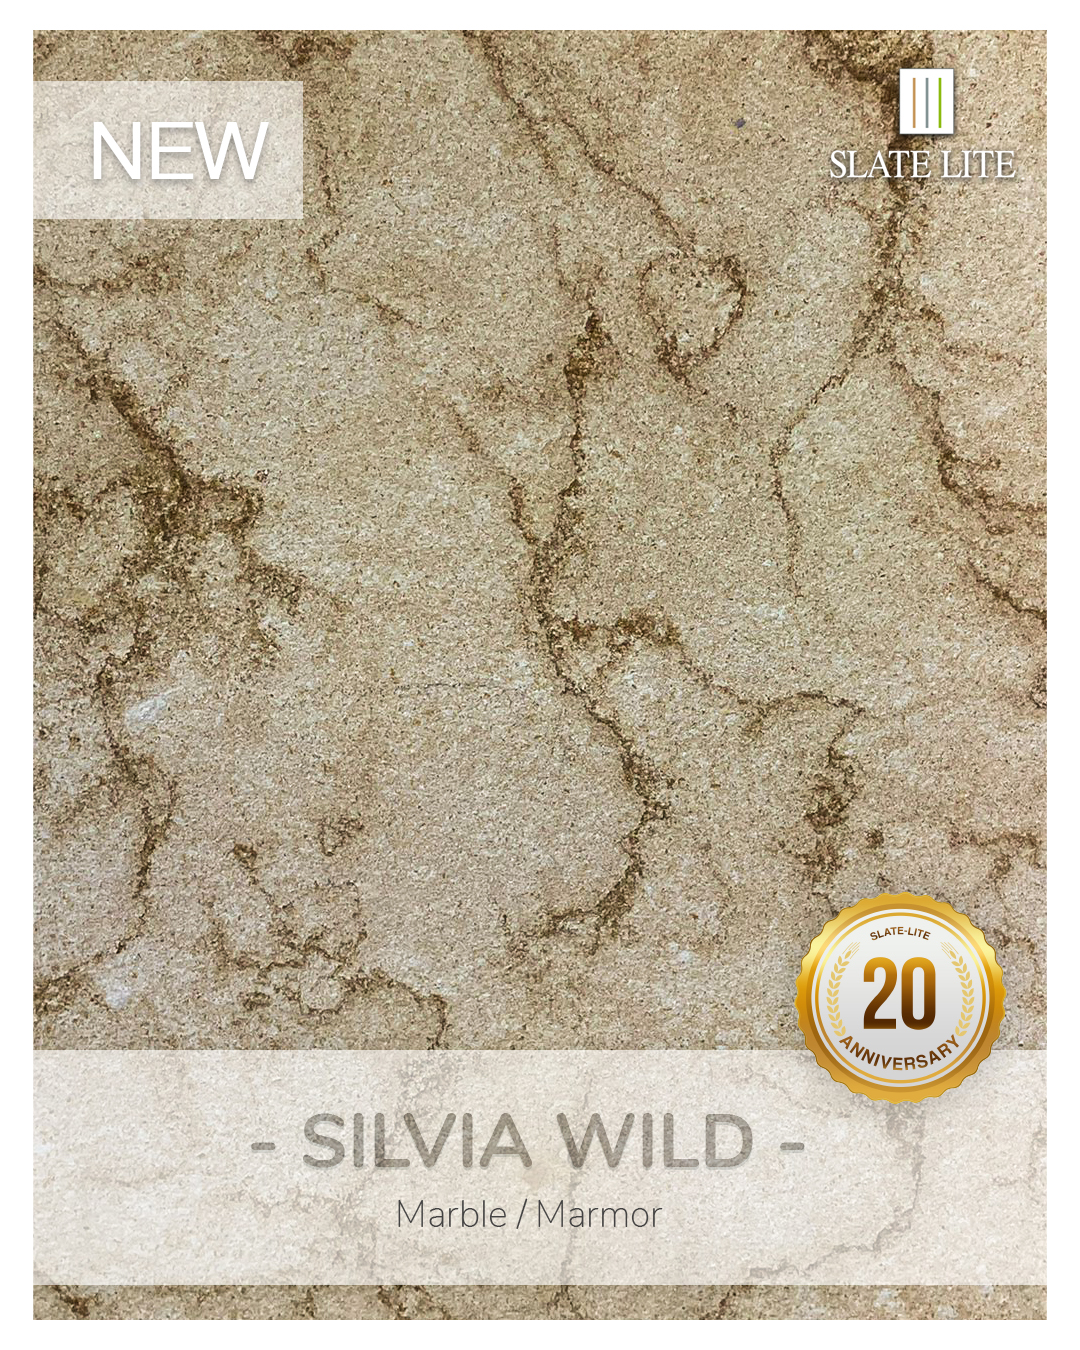 Slate-Lite Silvia Wild